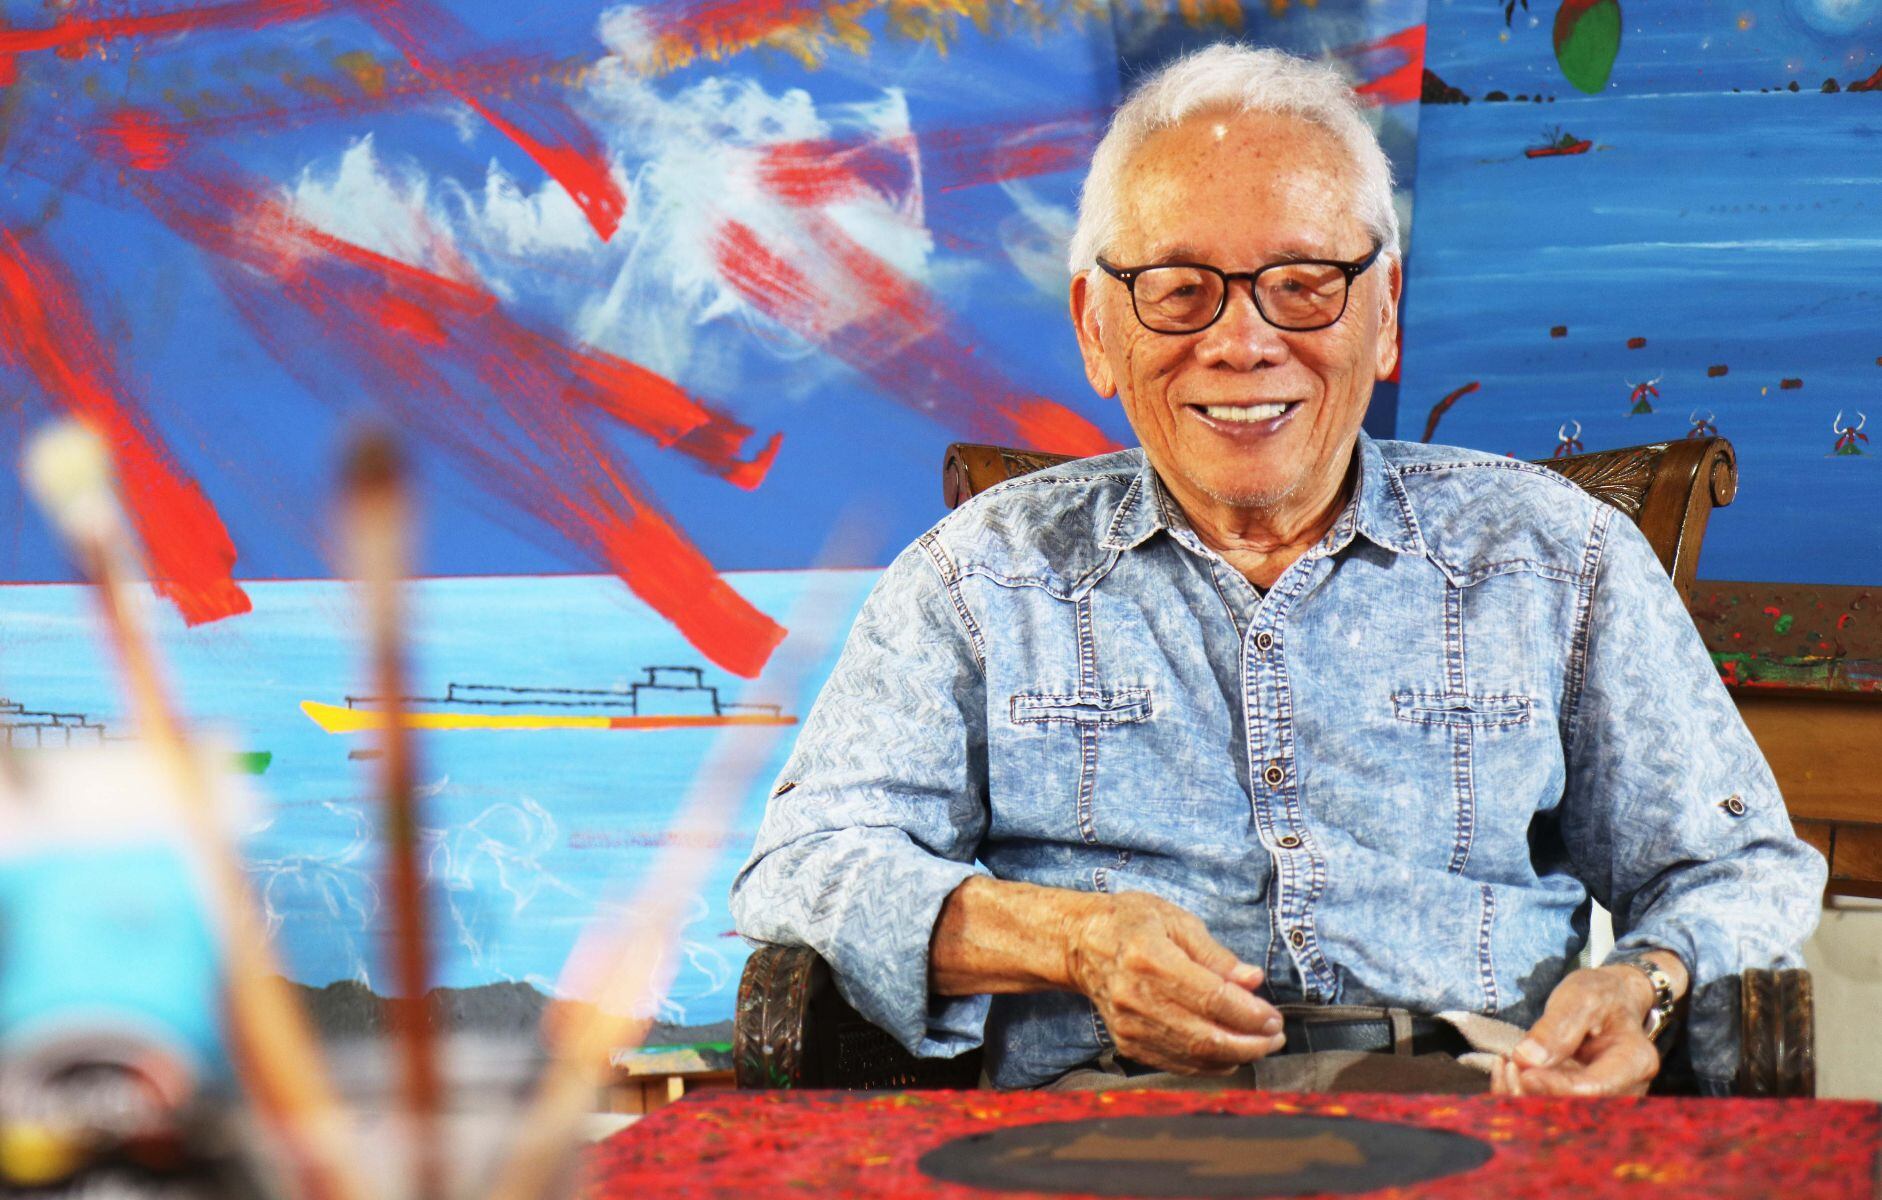 Isidro Con Wong nació en 1931, en Puntarenas. Parte de su visión artística se origina en las palabras que él recuerda de su mamá, las cuales entrelaza con su propia imaginación. Esta mezcla de mundos crea una fusión multicultural única.

